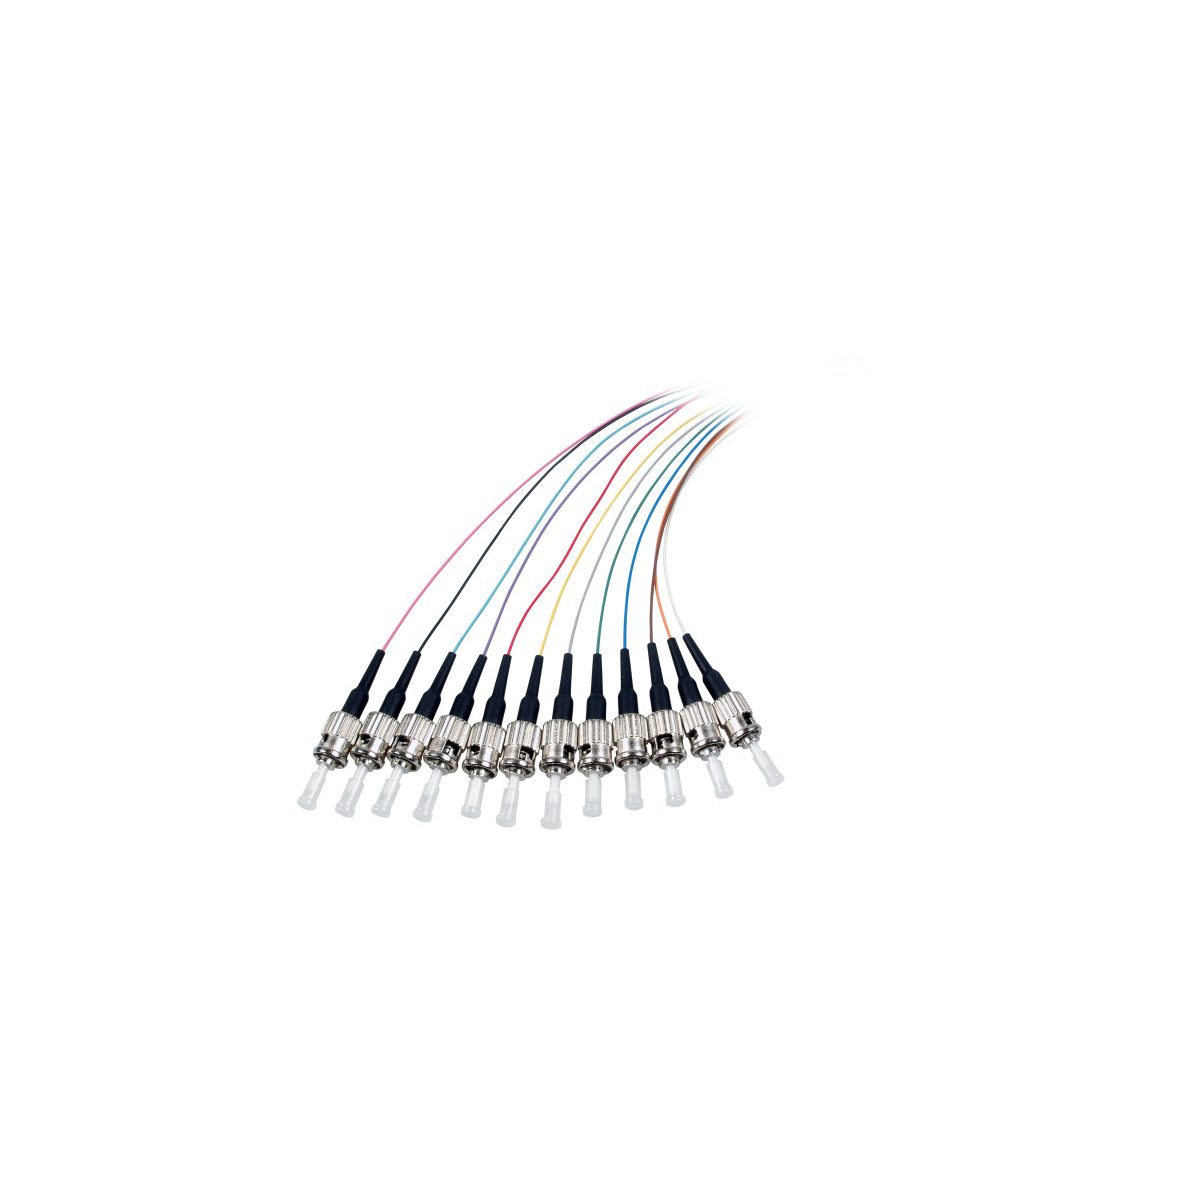 COMMUNIK Kabel Pigtails / m 2 ST Faserpigtail, Glasfaserkabel